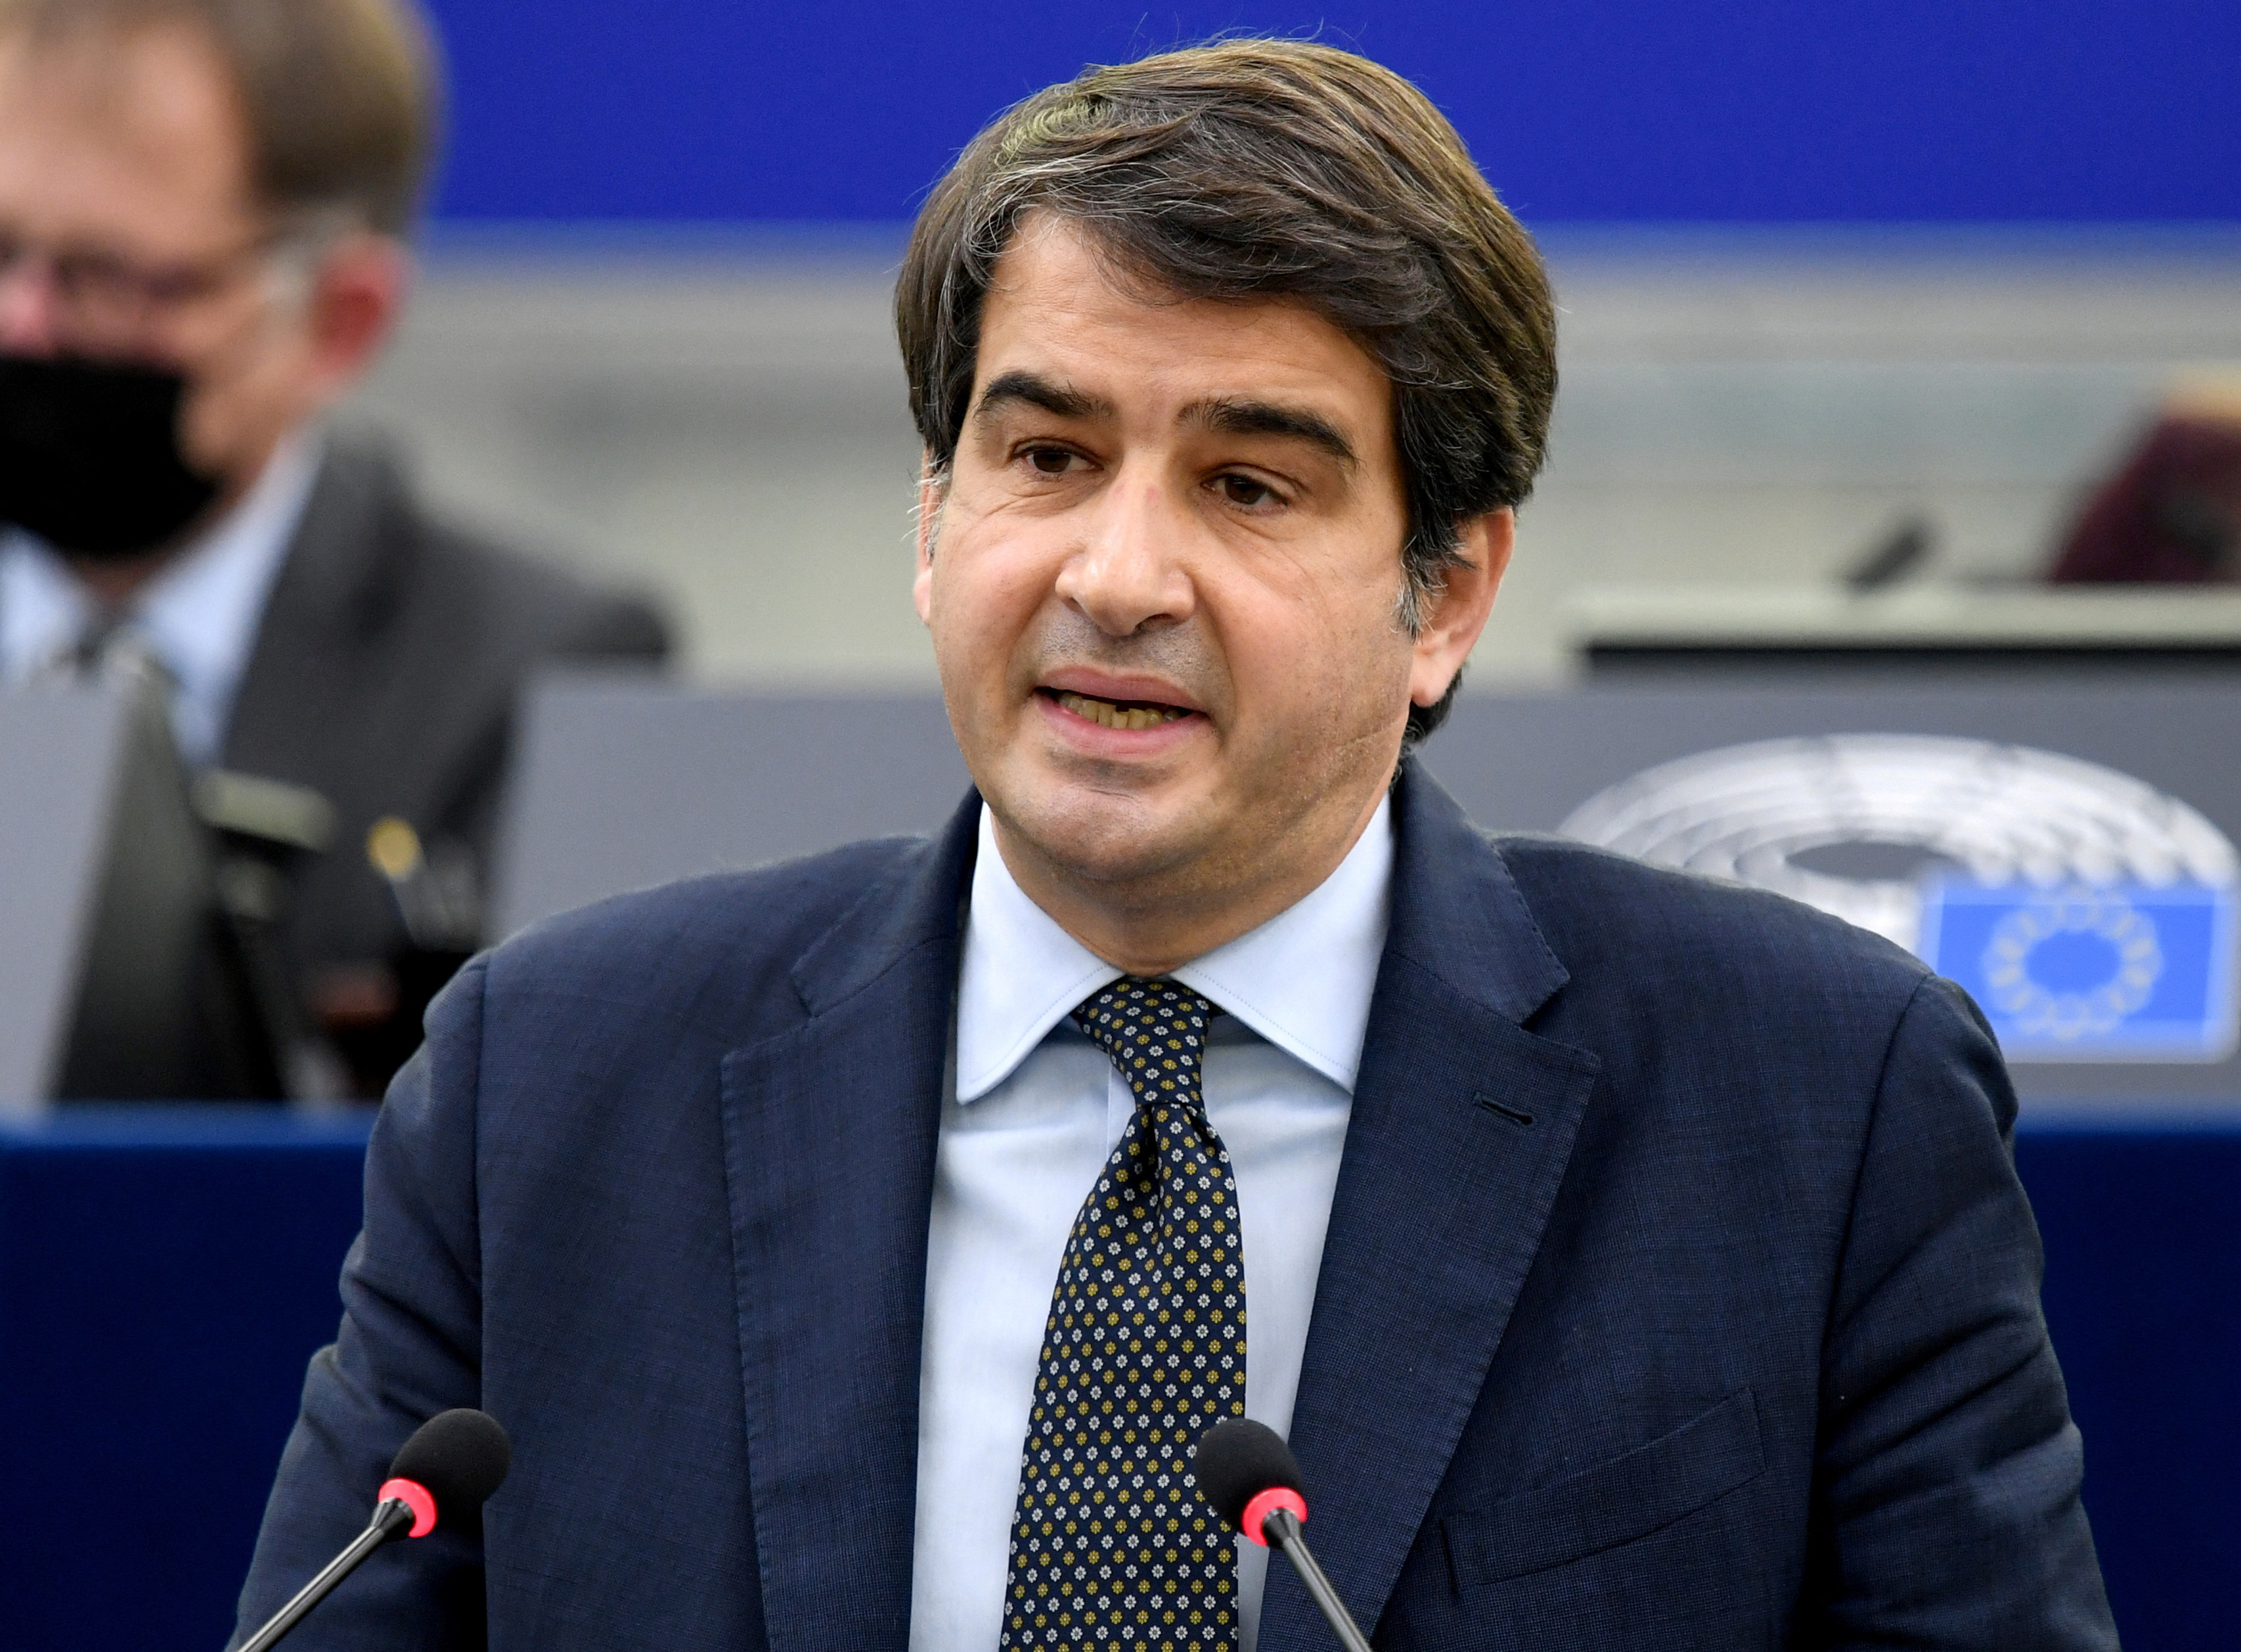 Raffaele Fitto European Parliament plenary session in Strasbourg